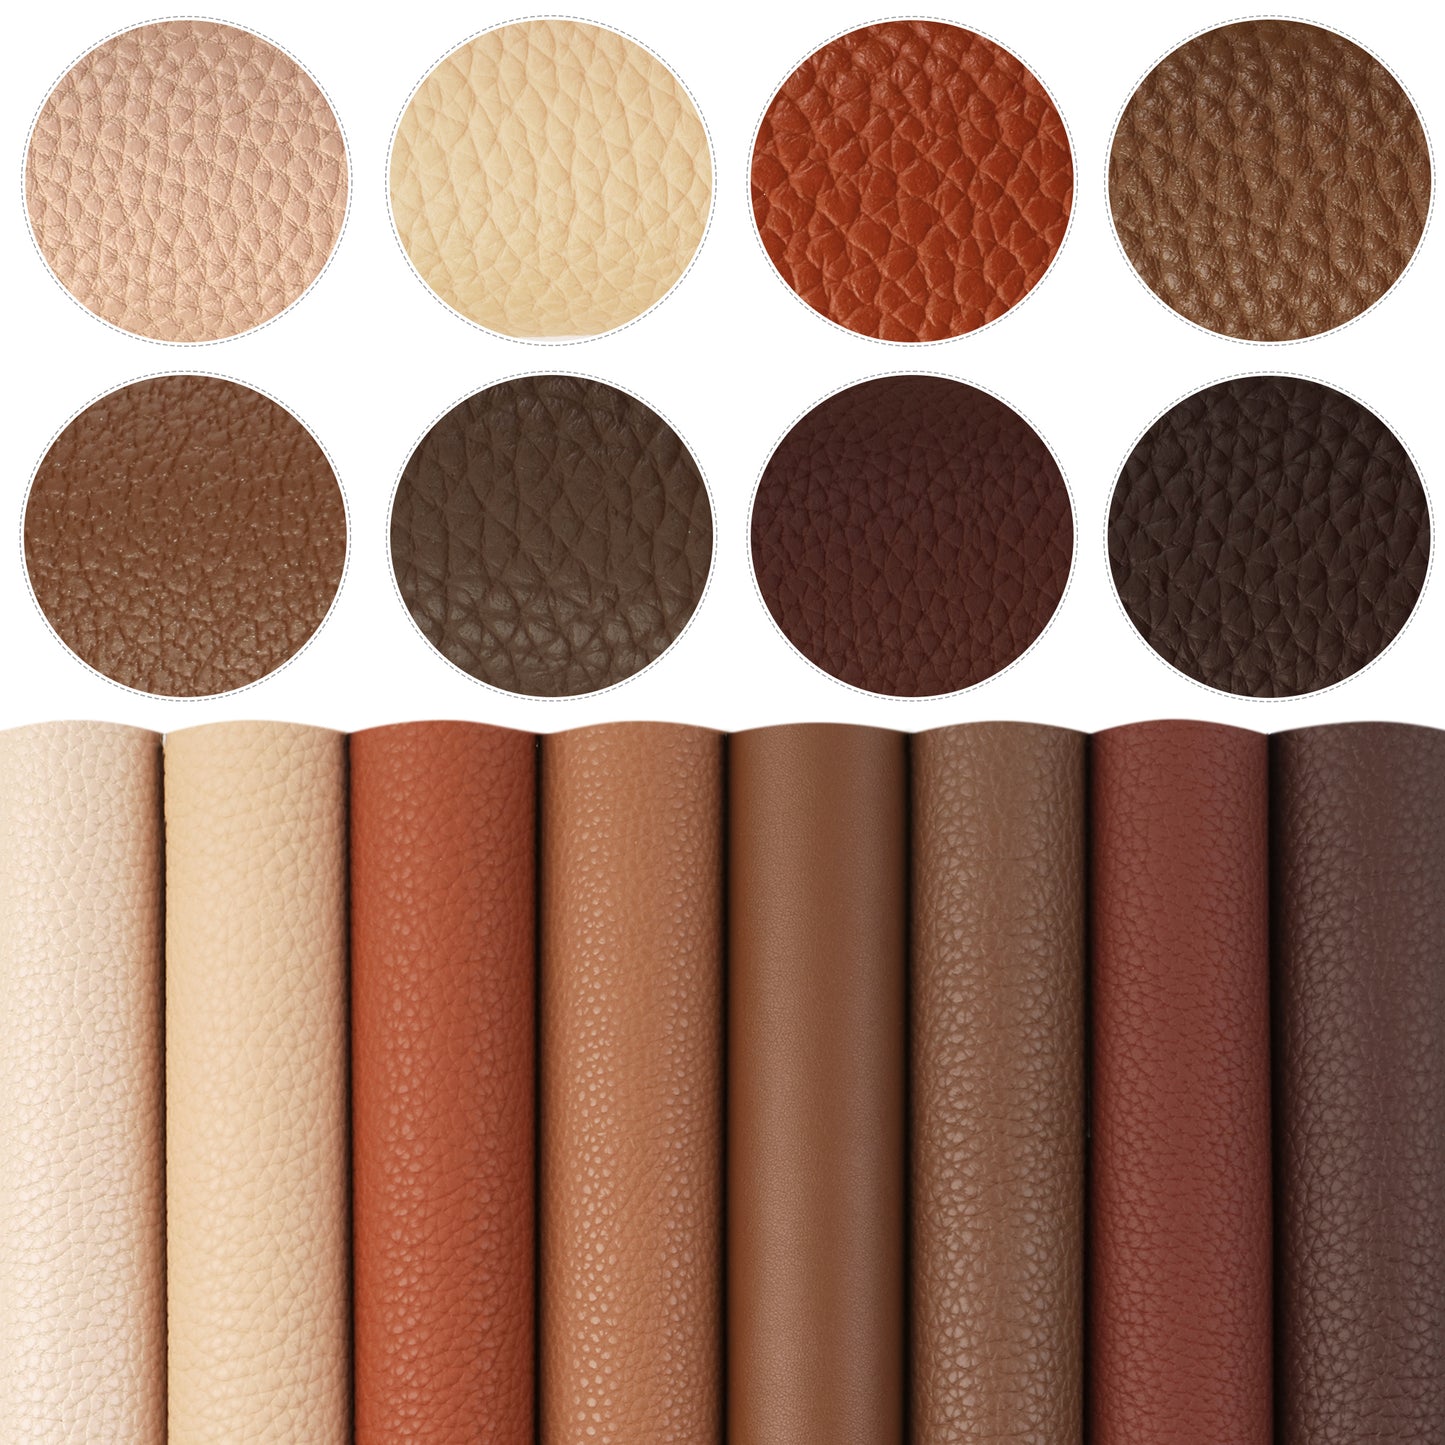 Brown Color Faux Leather Sets Wholesale